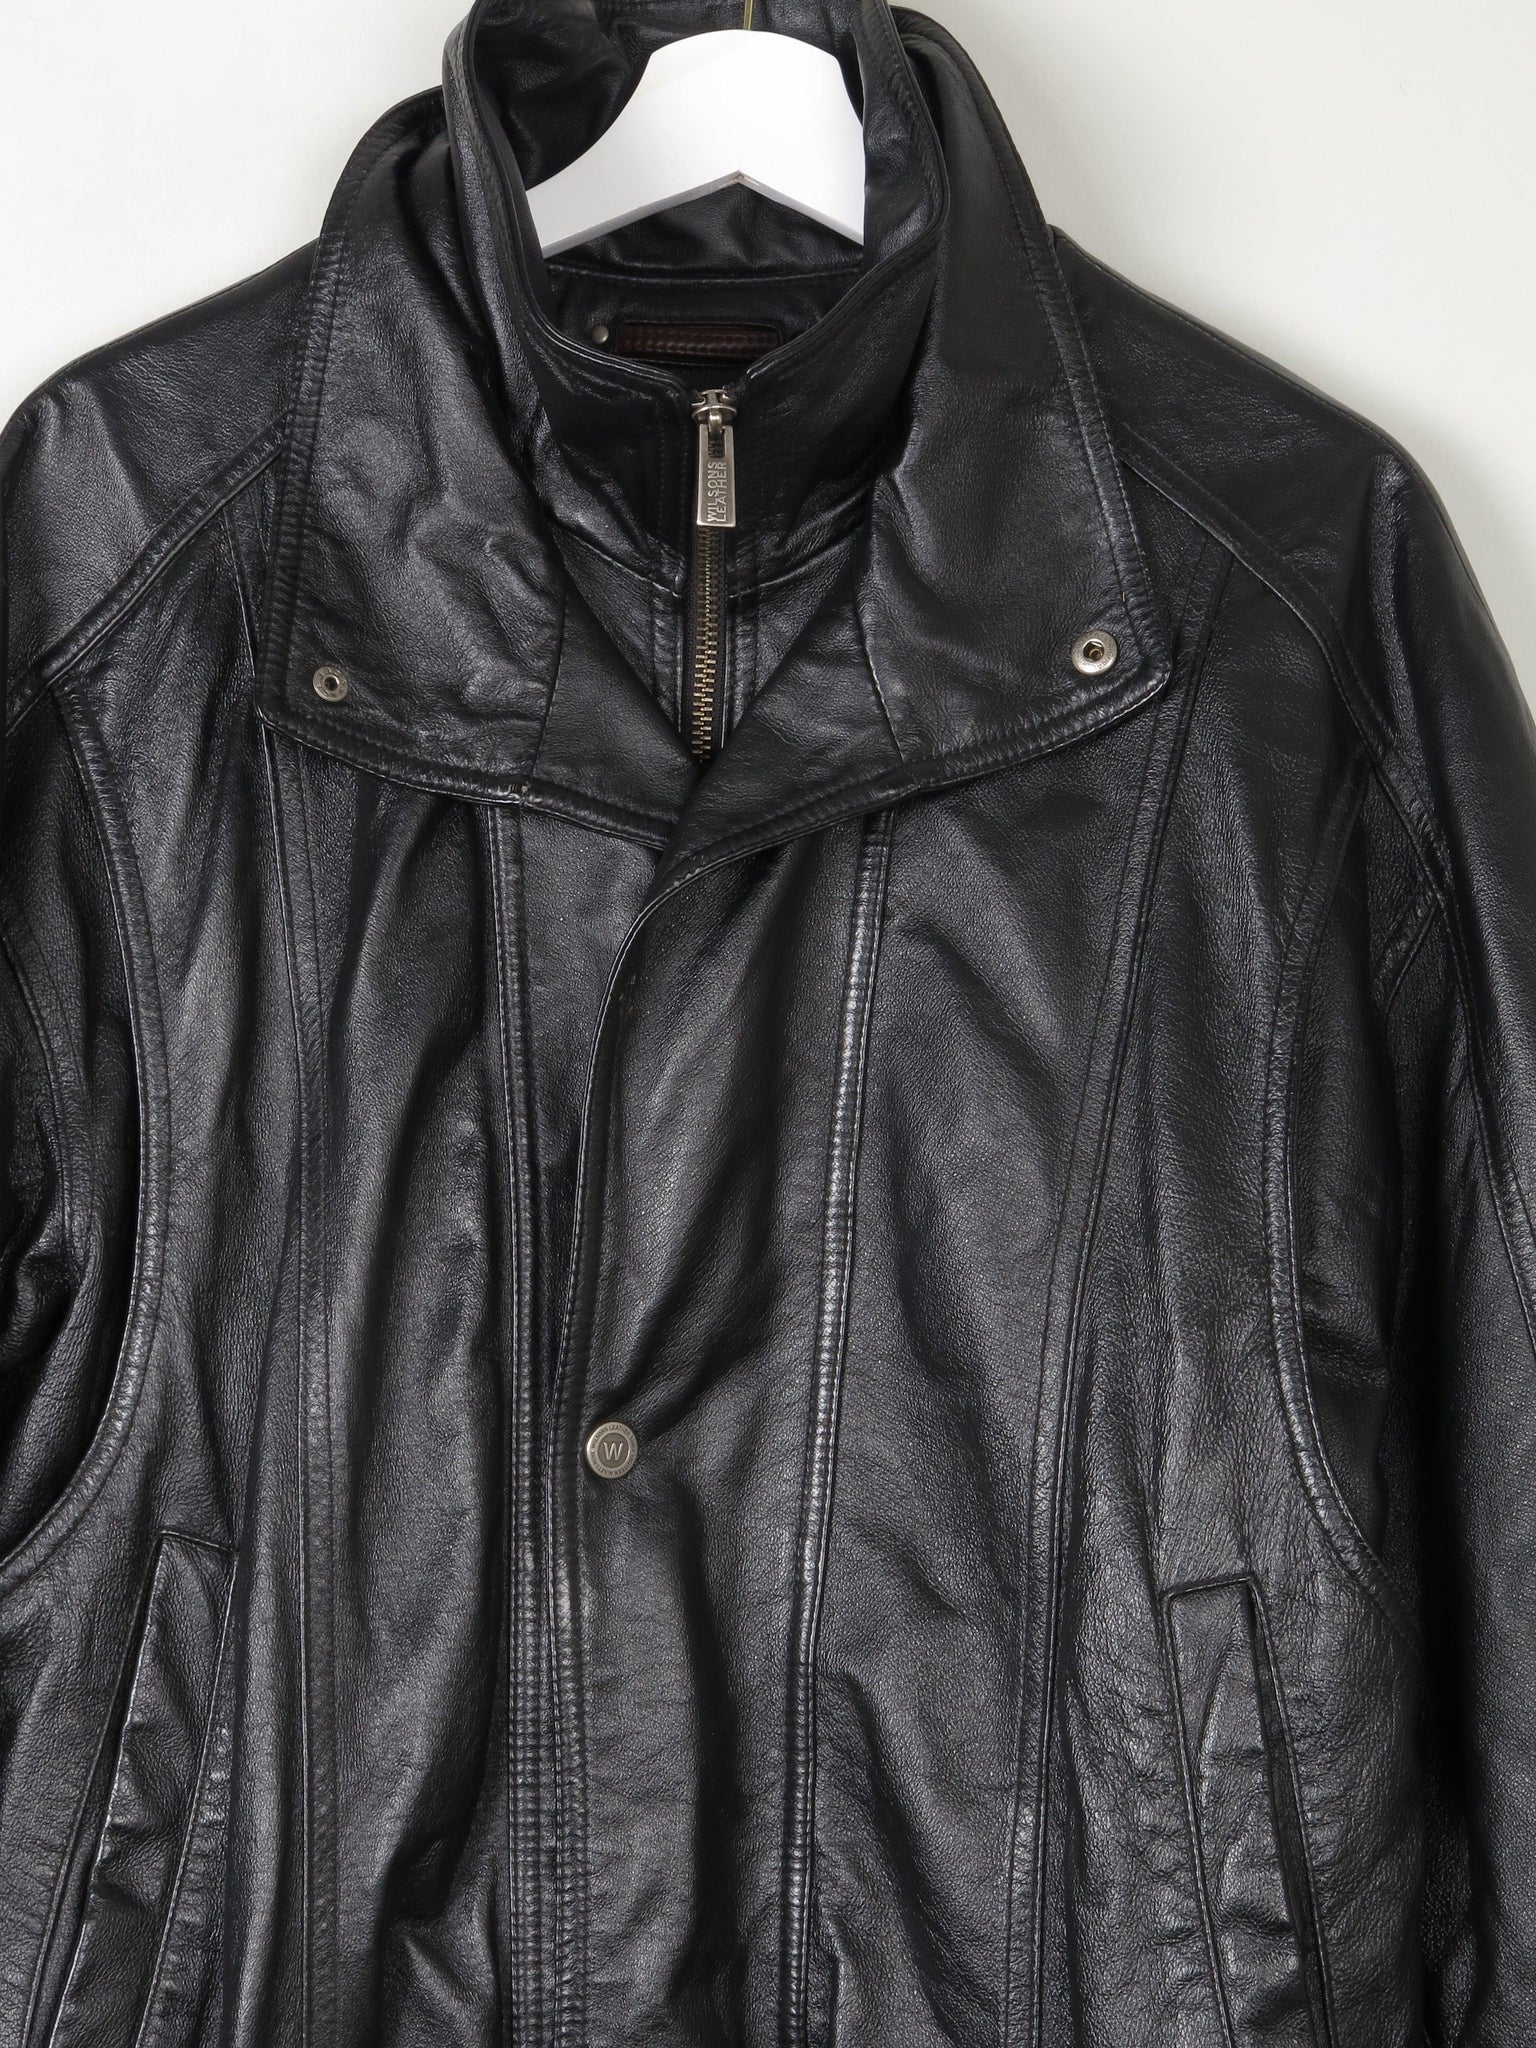 Men's Vintage  Black Leather Bomber Jacket M - The Harlequin